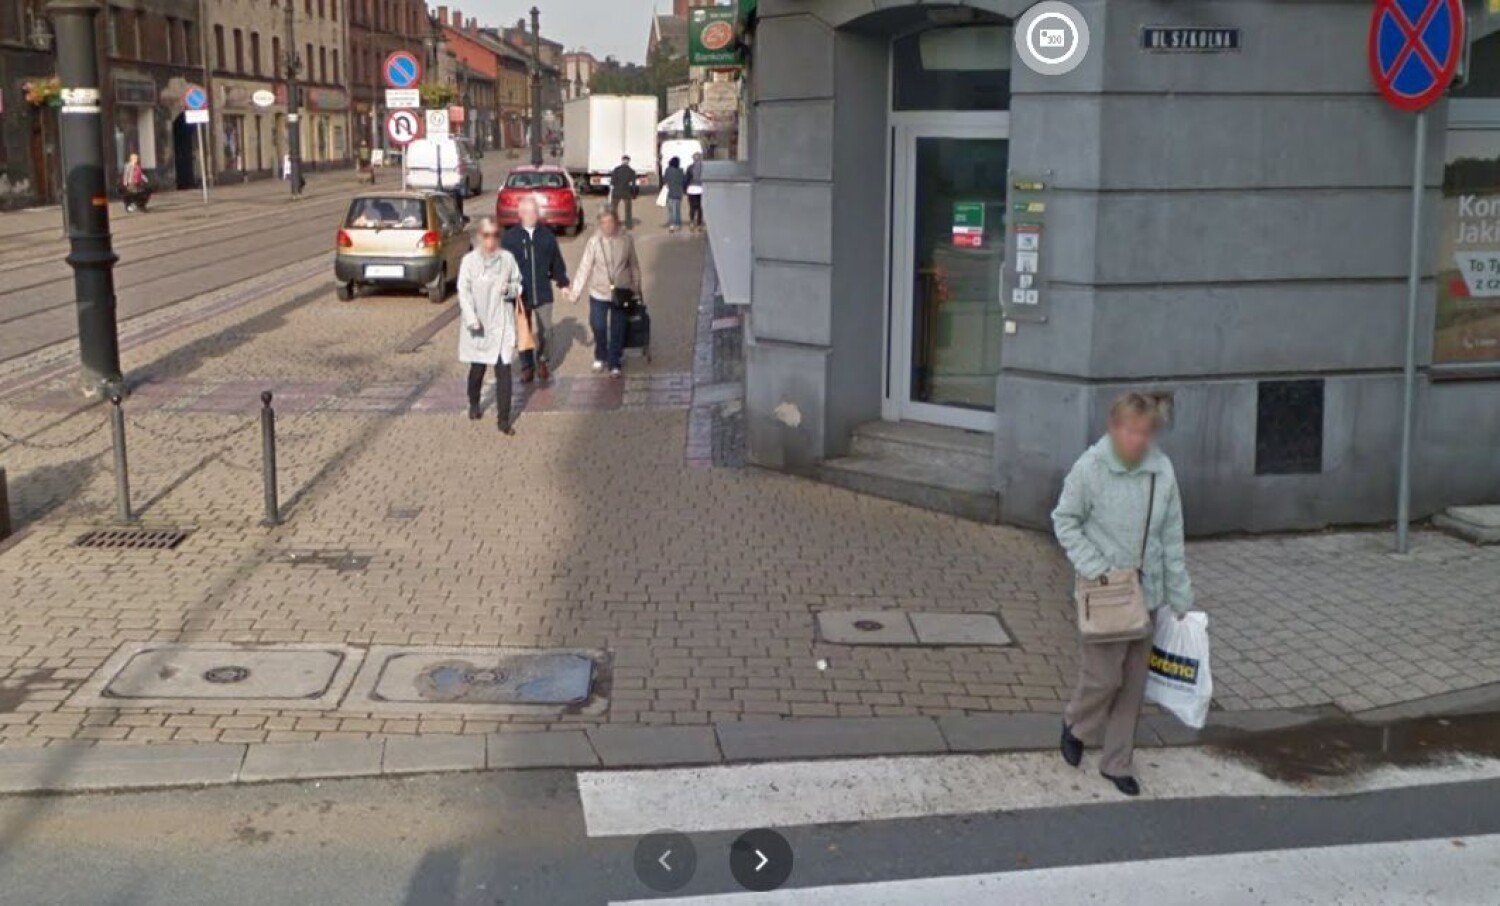 Oto ulice Świętochłowic w Google Street View. Kogo złapała